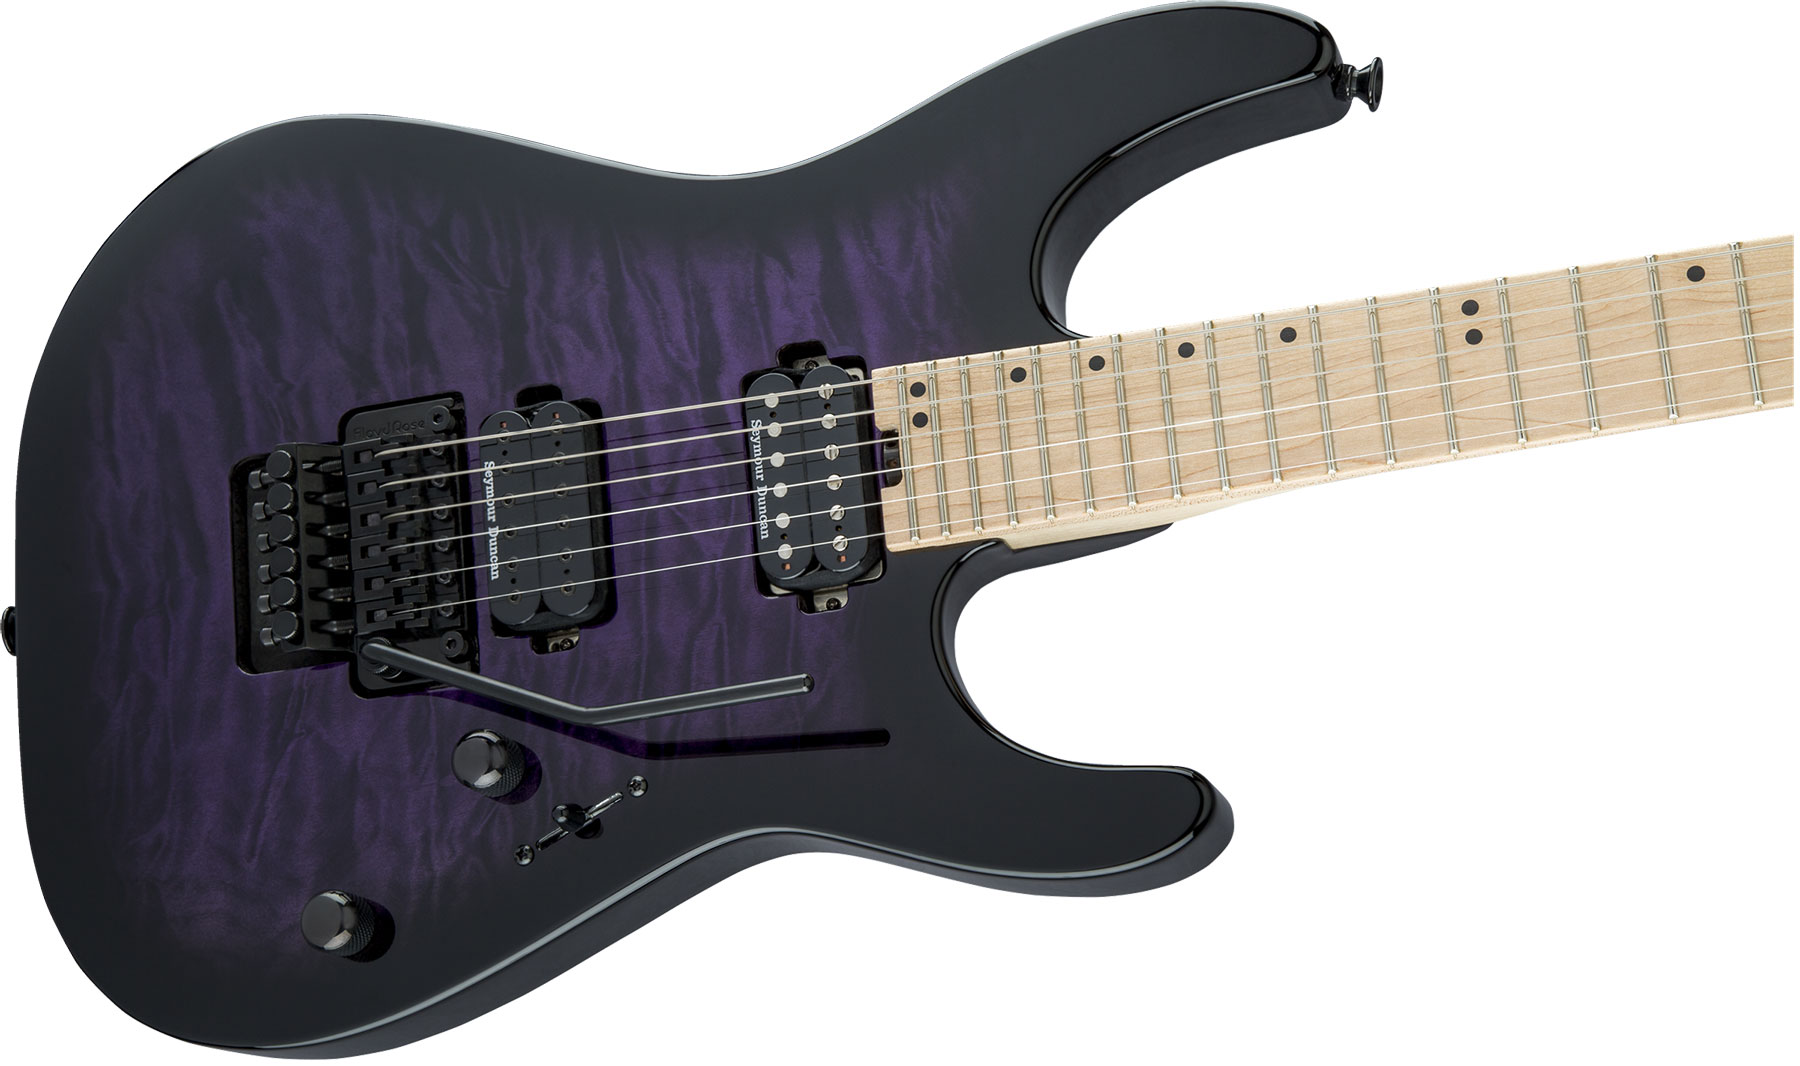 Charvel Pro-mod Dk24 Hh Fr M Qm Trem Mn - Transparent Purple Burst - E-Gitarre in Str-Form - Variation 2